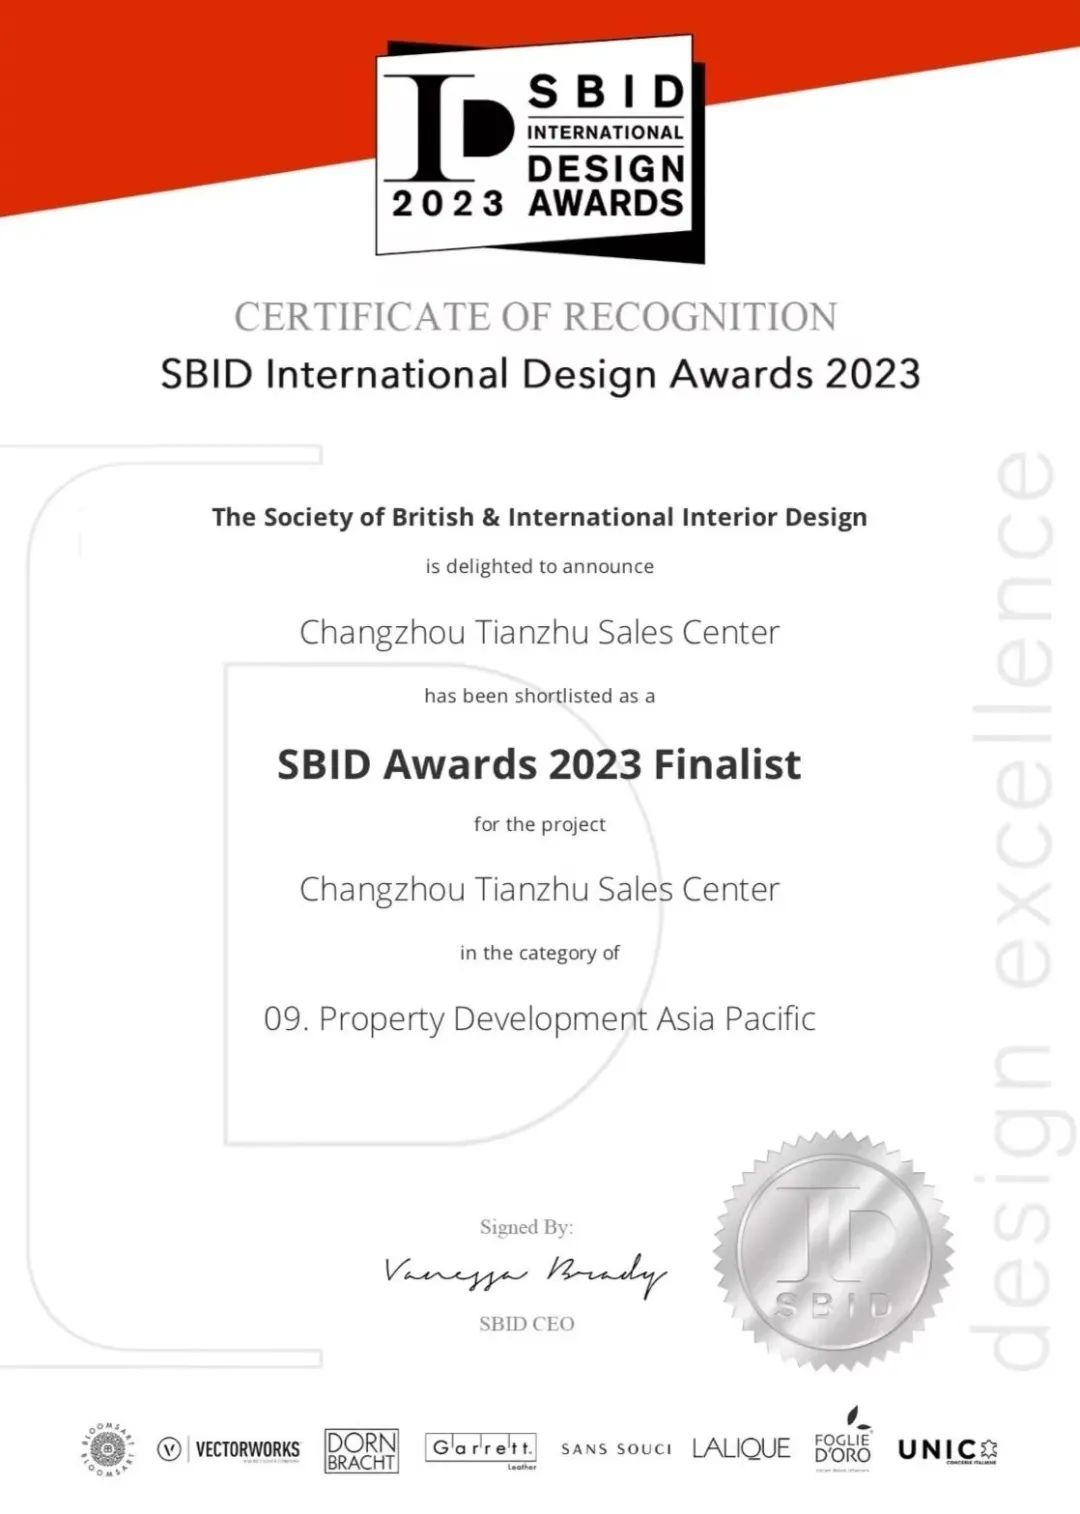 源生美柒度设计作品再次入围2023英国SBID国际设计大奖-最佳亚太地区房地产开发奖